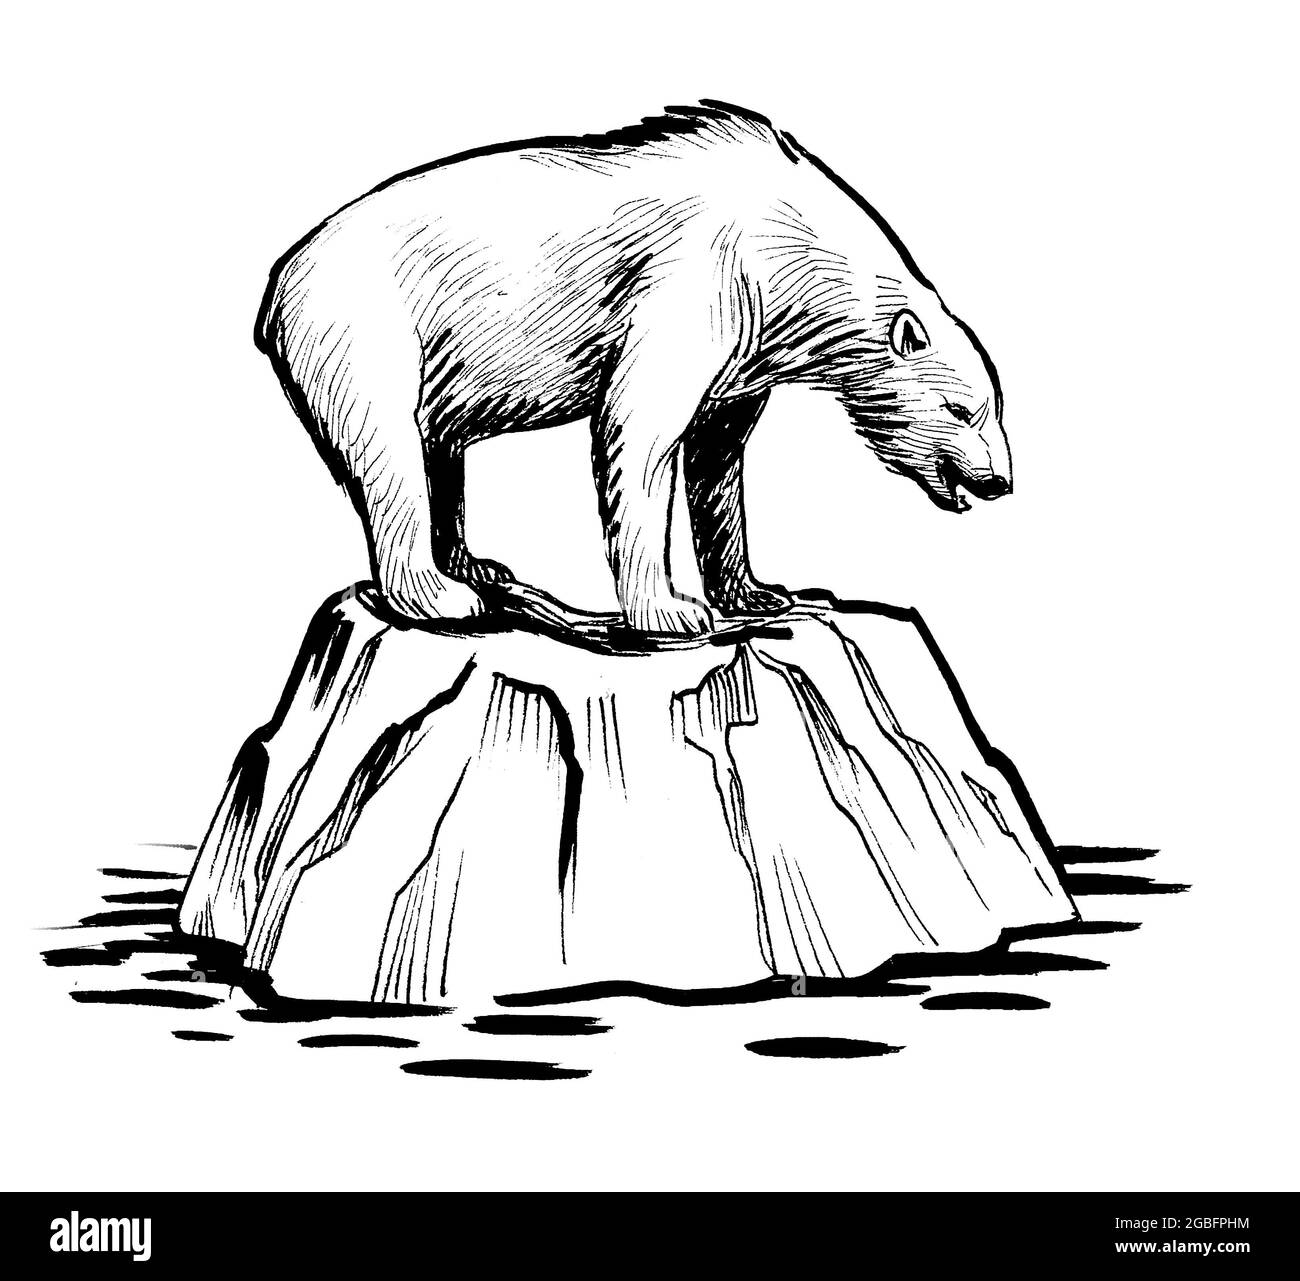 Orso polare sull'iceberg. Disegno in bianco e nero con inchiostro Foto  stock - Alamy